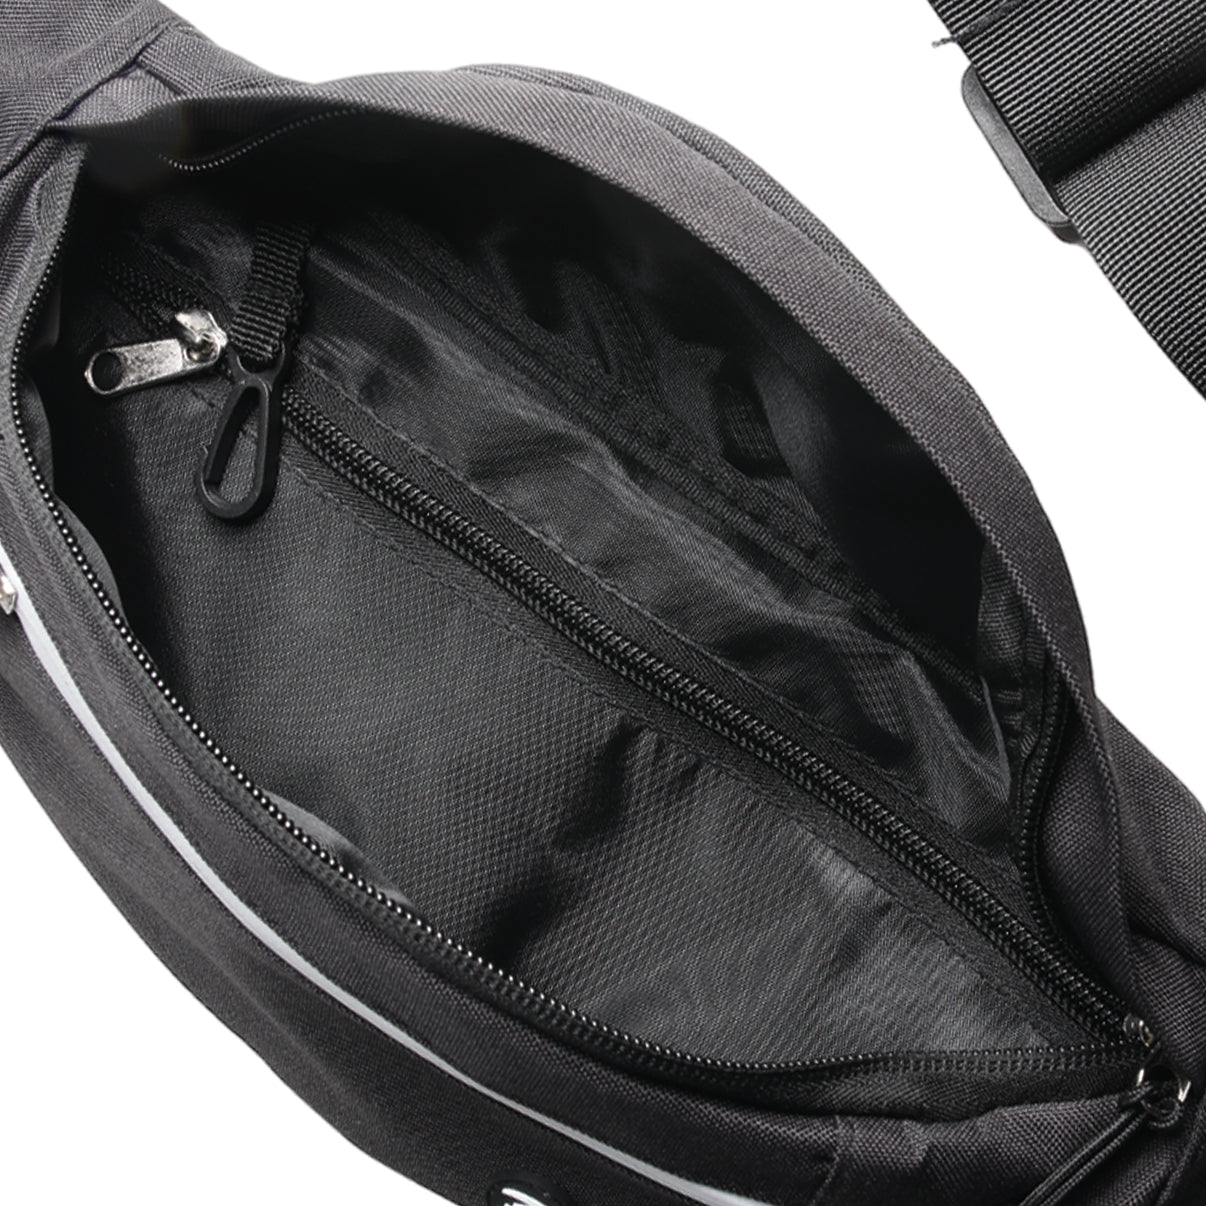 Zol Moda Waist Bag (Black) - Zol Cycling